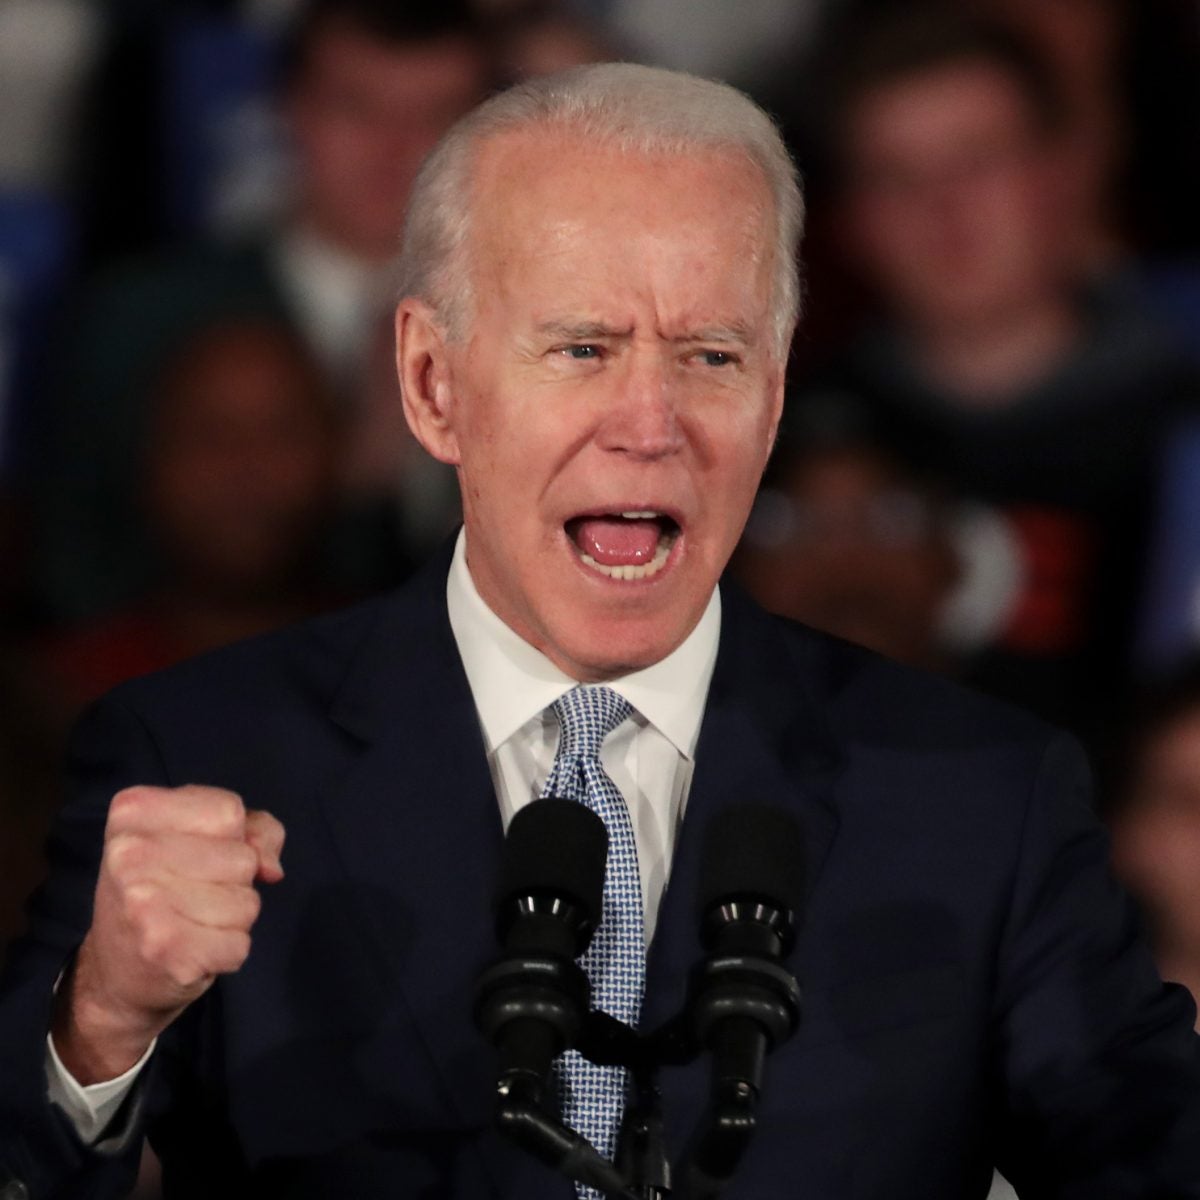 Joe Biden Told Us He’d Be The Nominee